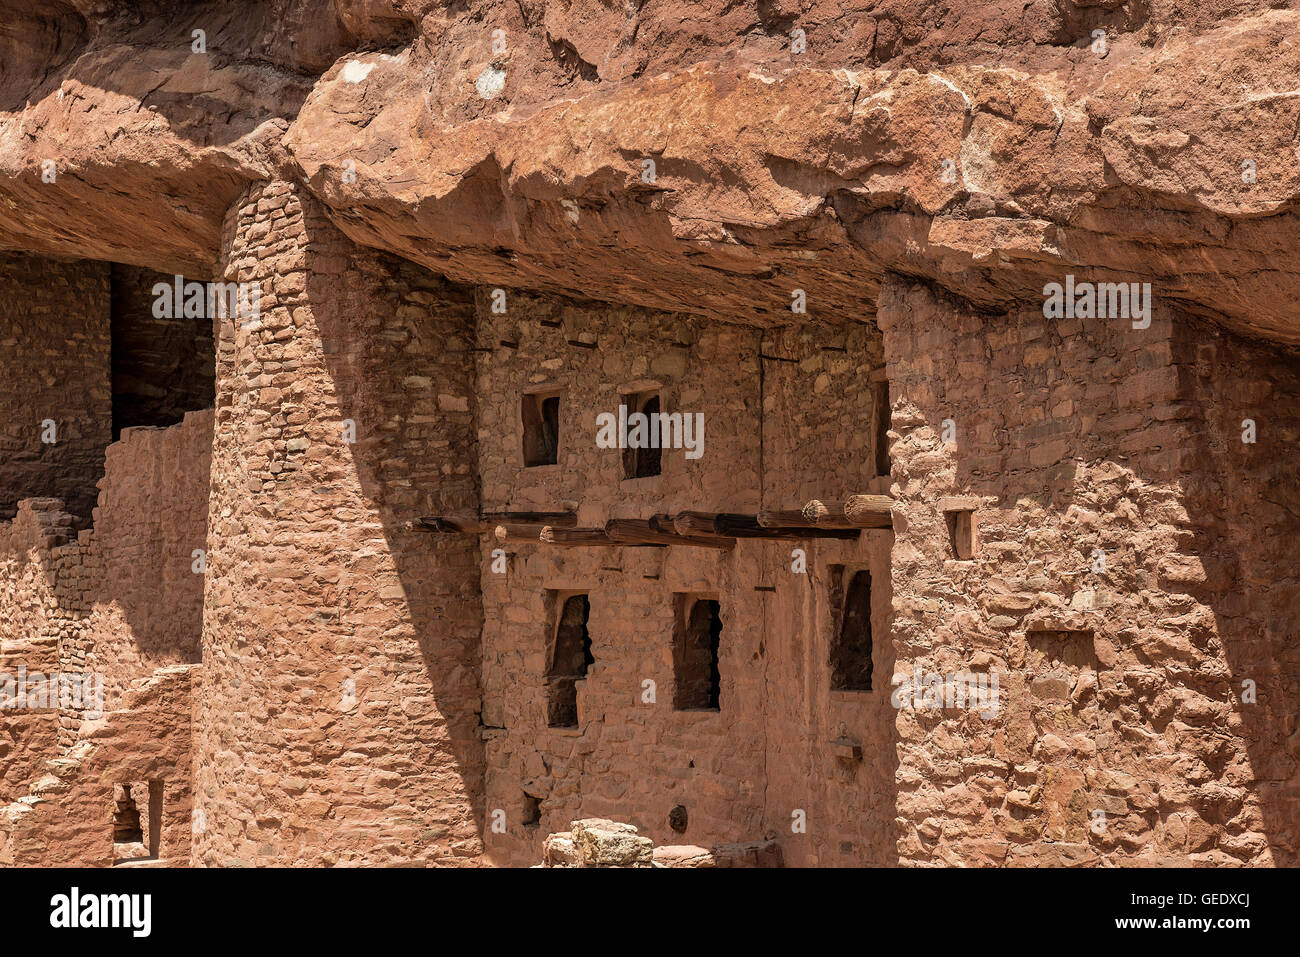 Manitou Cliff Dwellings der Anasazi Indianer Indianerstamm. Diese Wohnungen wurden aus dem weichen roten Sandstein gehauen. Stockfoto